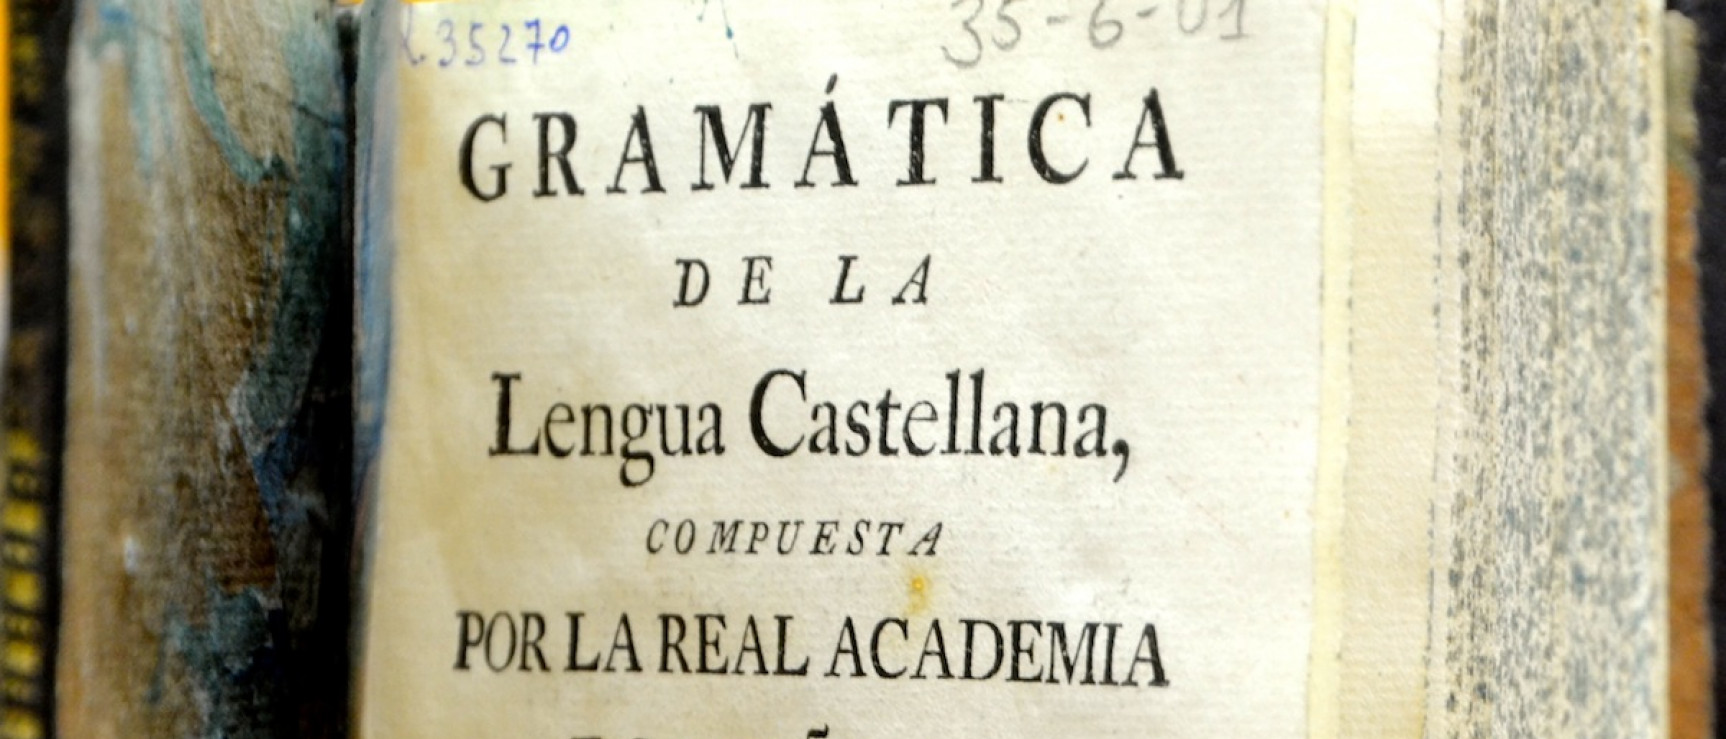 Primera gramática de la RAE, 1771